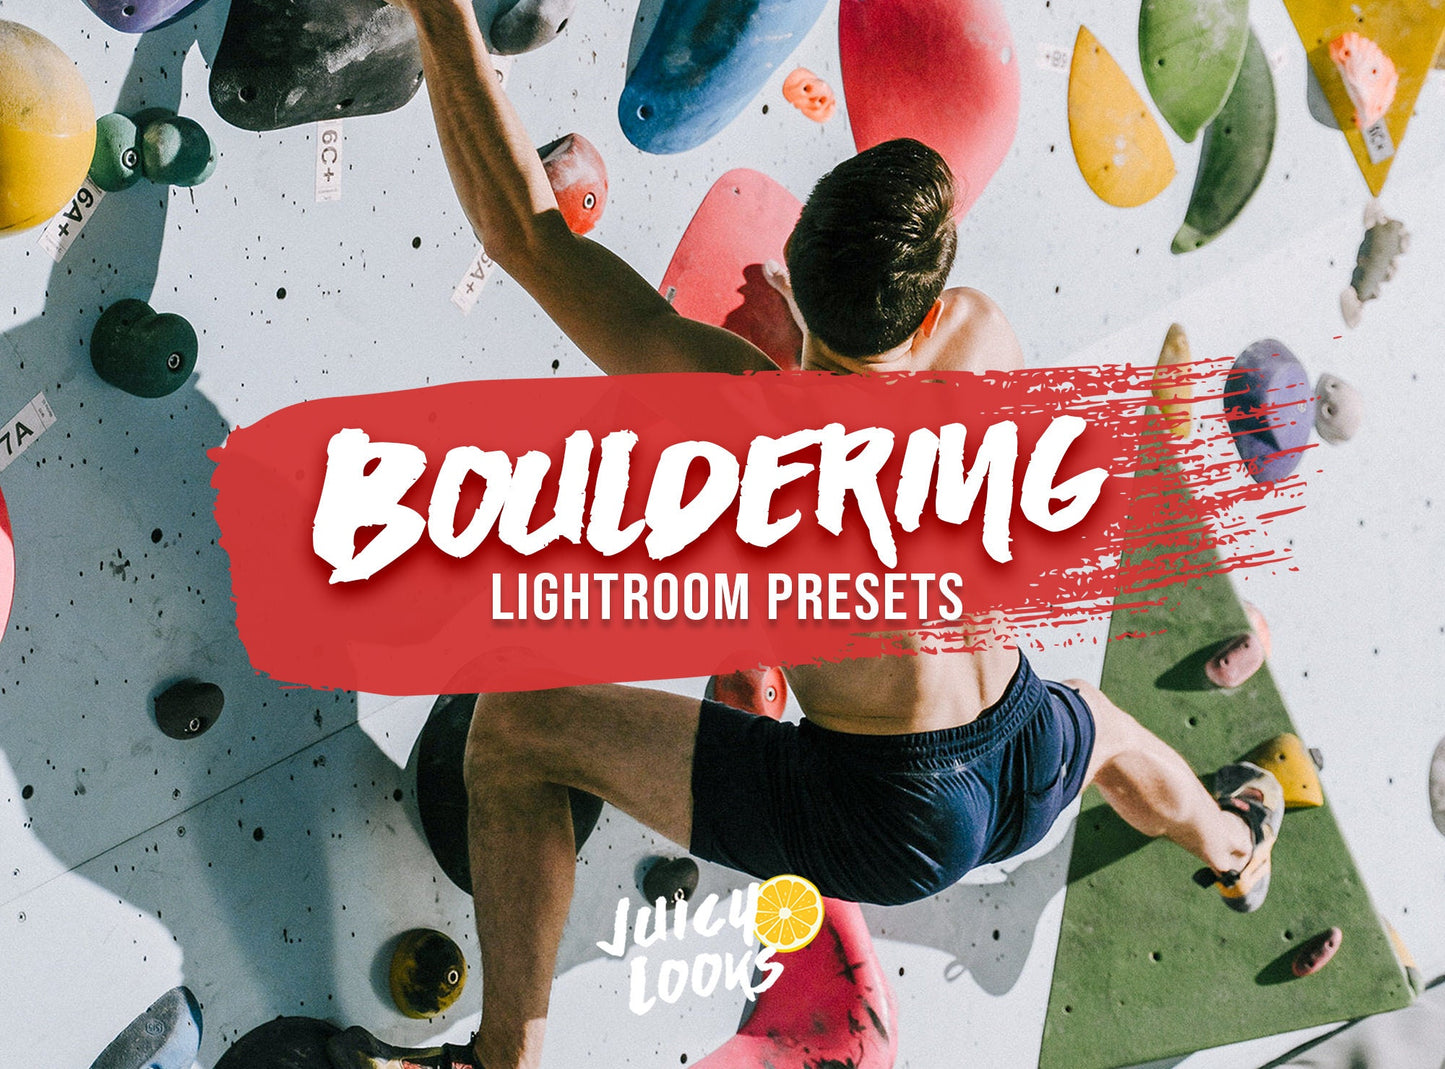 Bouldering Lightroom Presets for Mobile & Desktop - Juicy Looks Presets